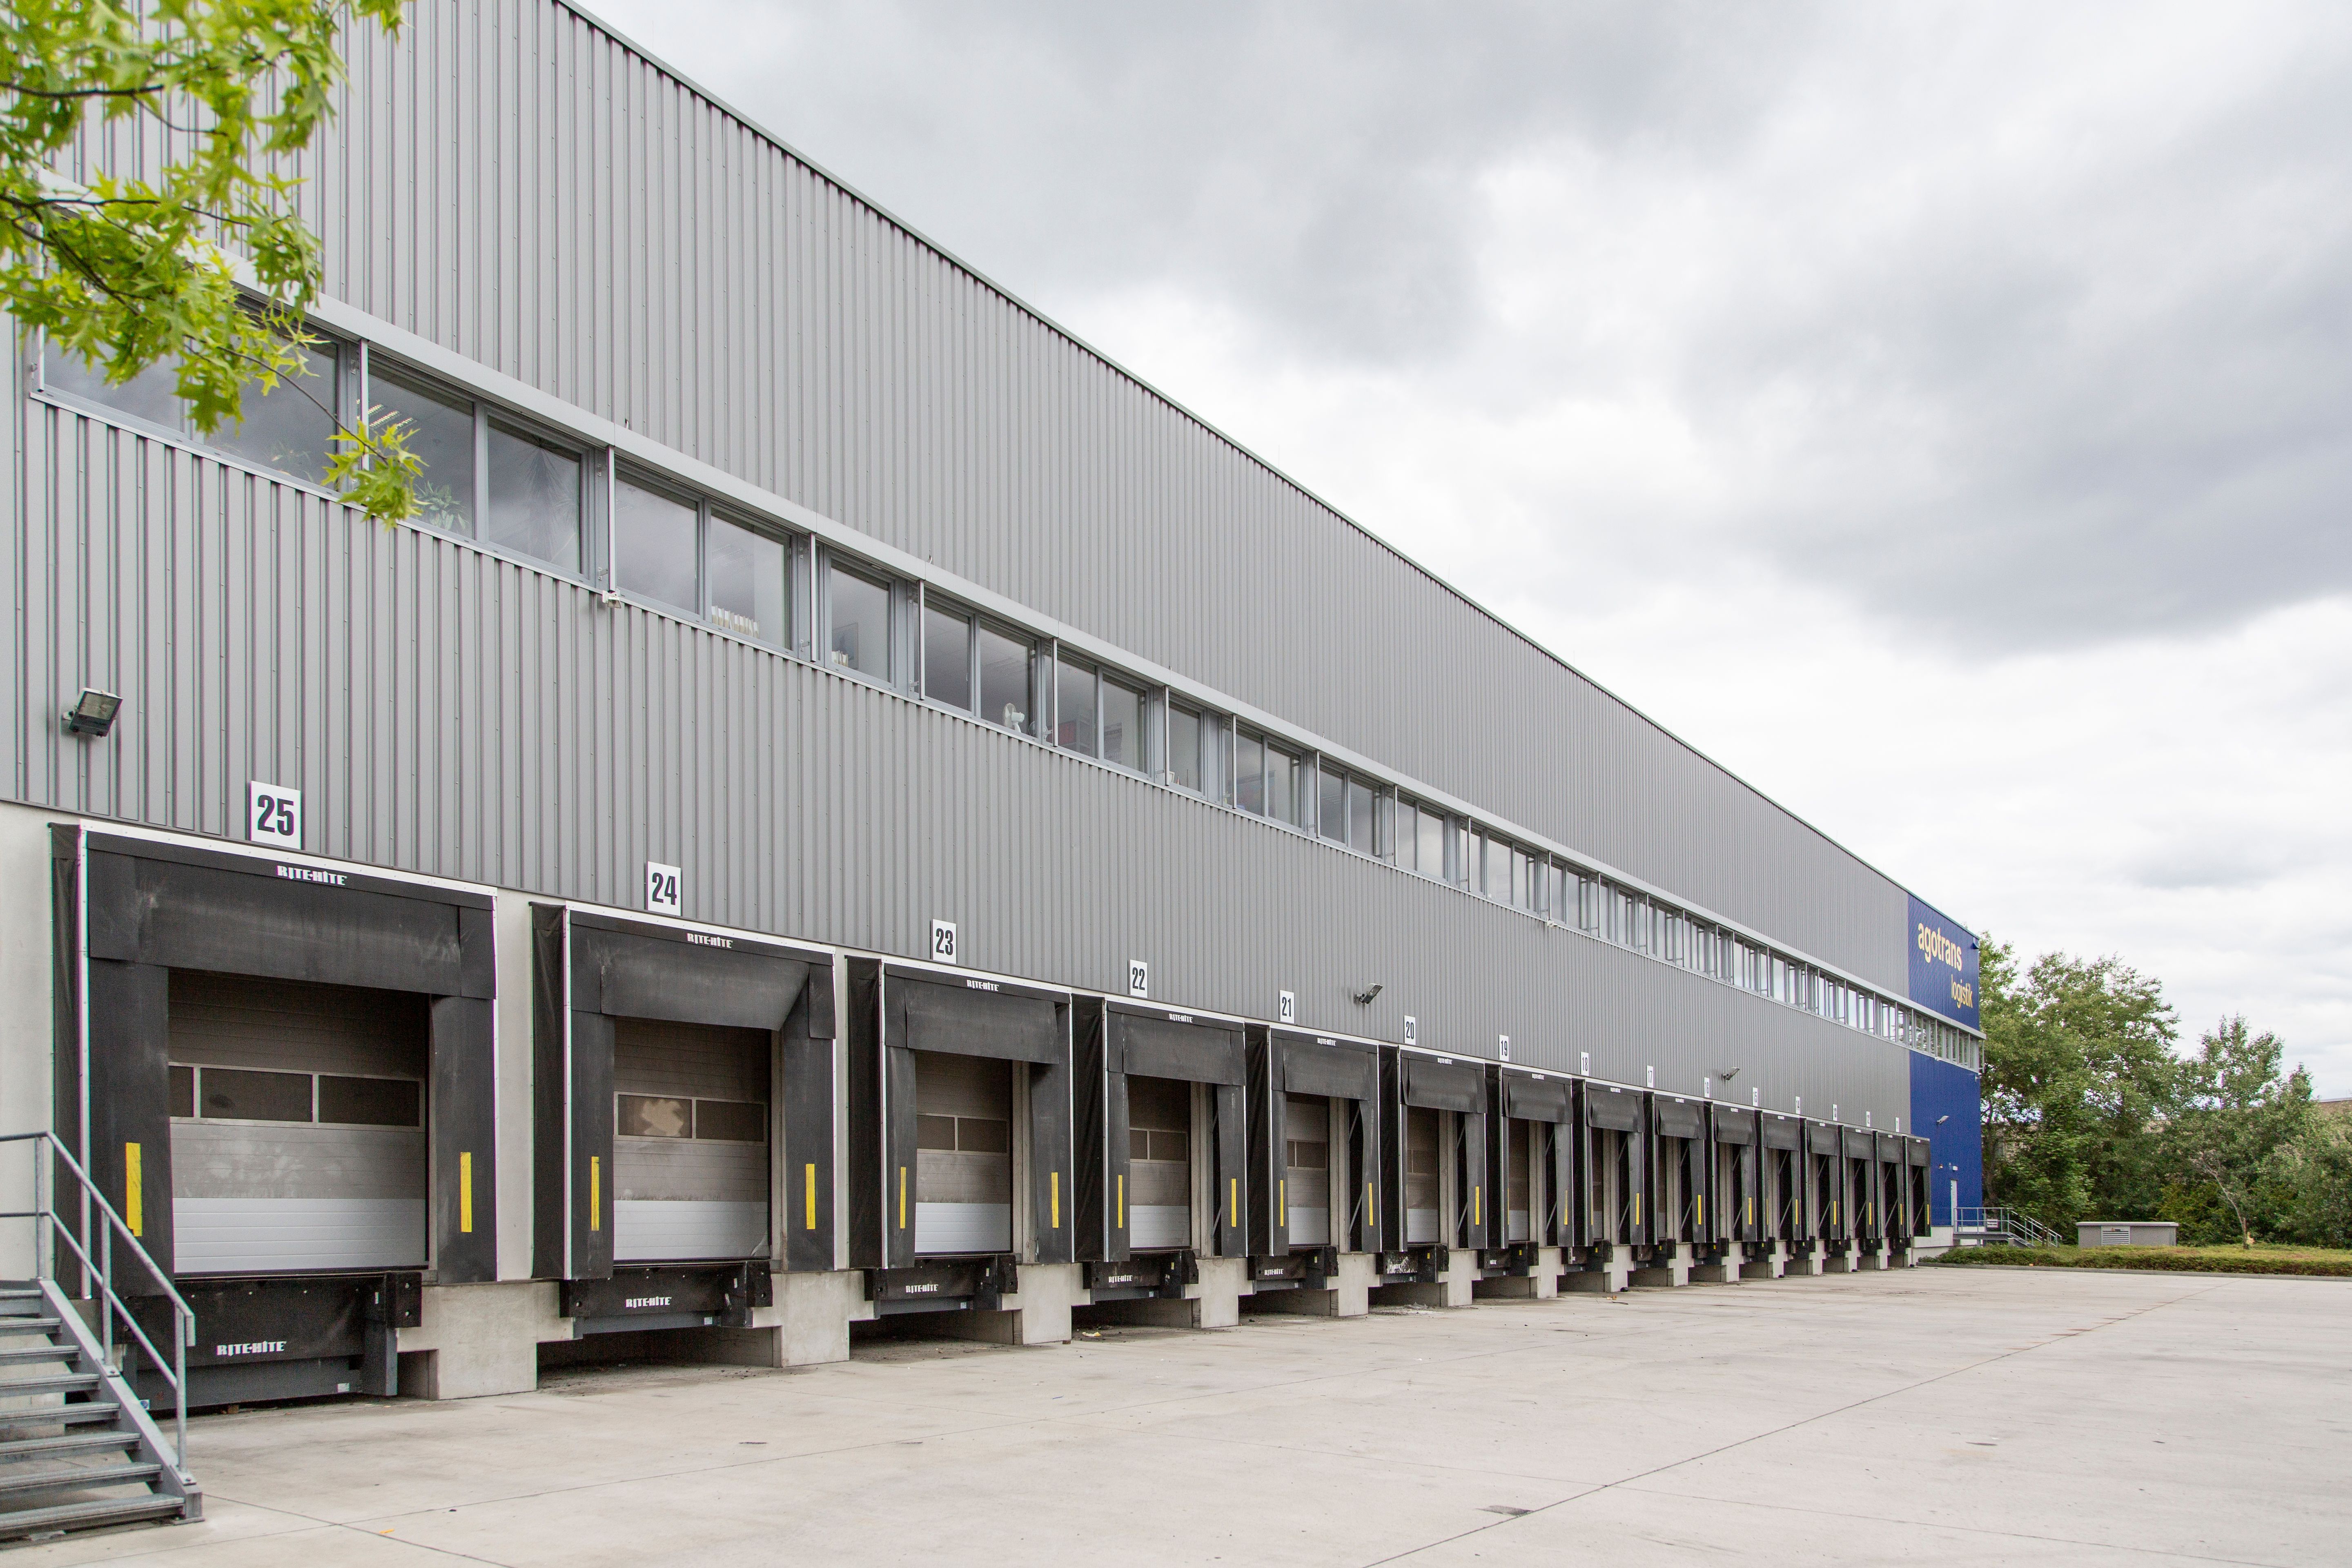 agotrans Logistik GmbH - Hauptsitz Deutschland - Rodgau - Nieder Roden